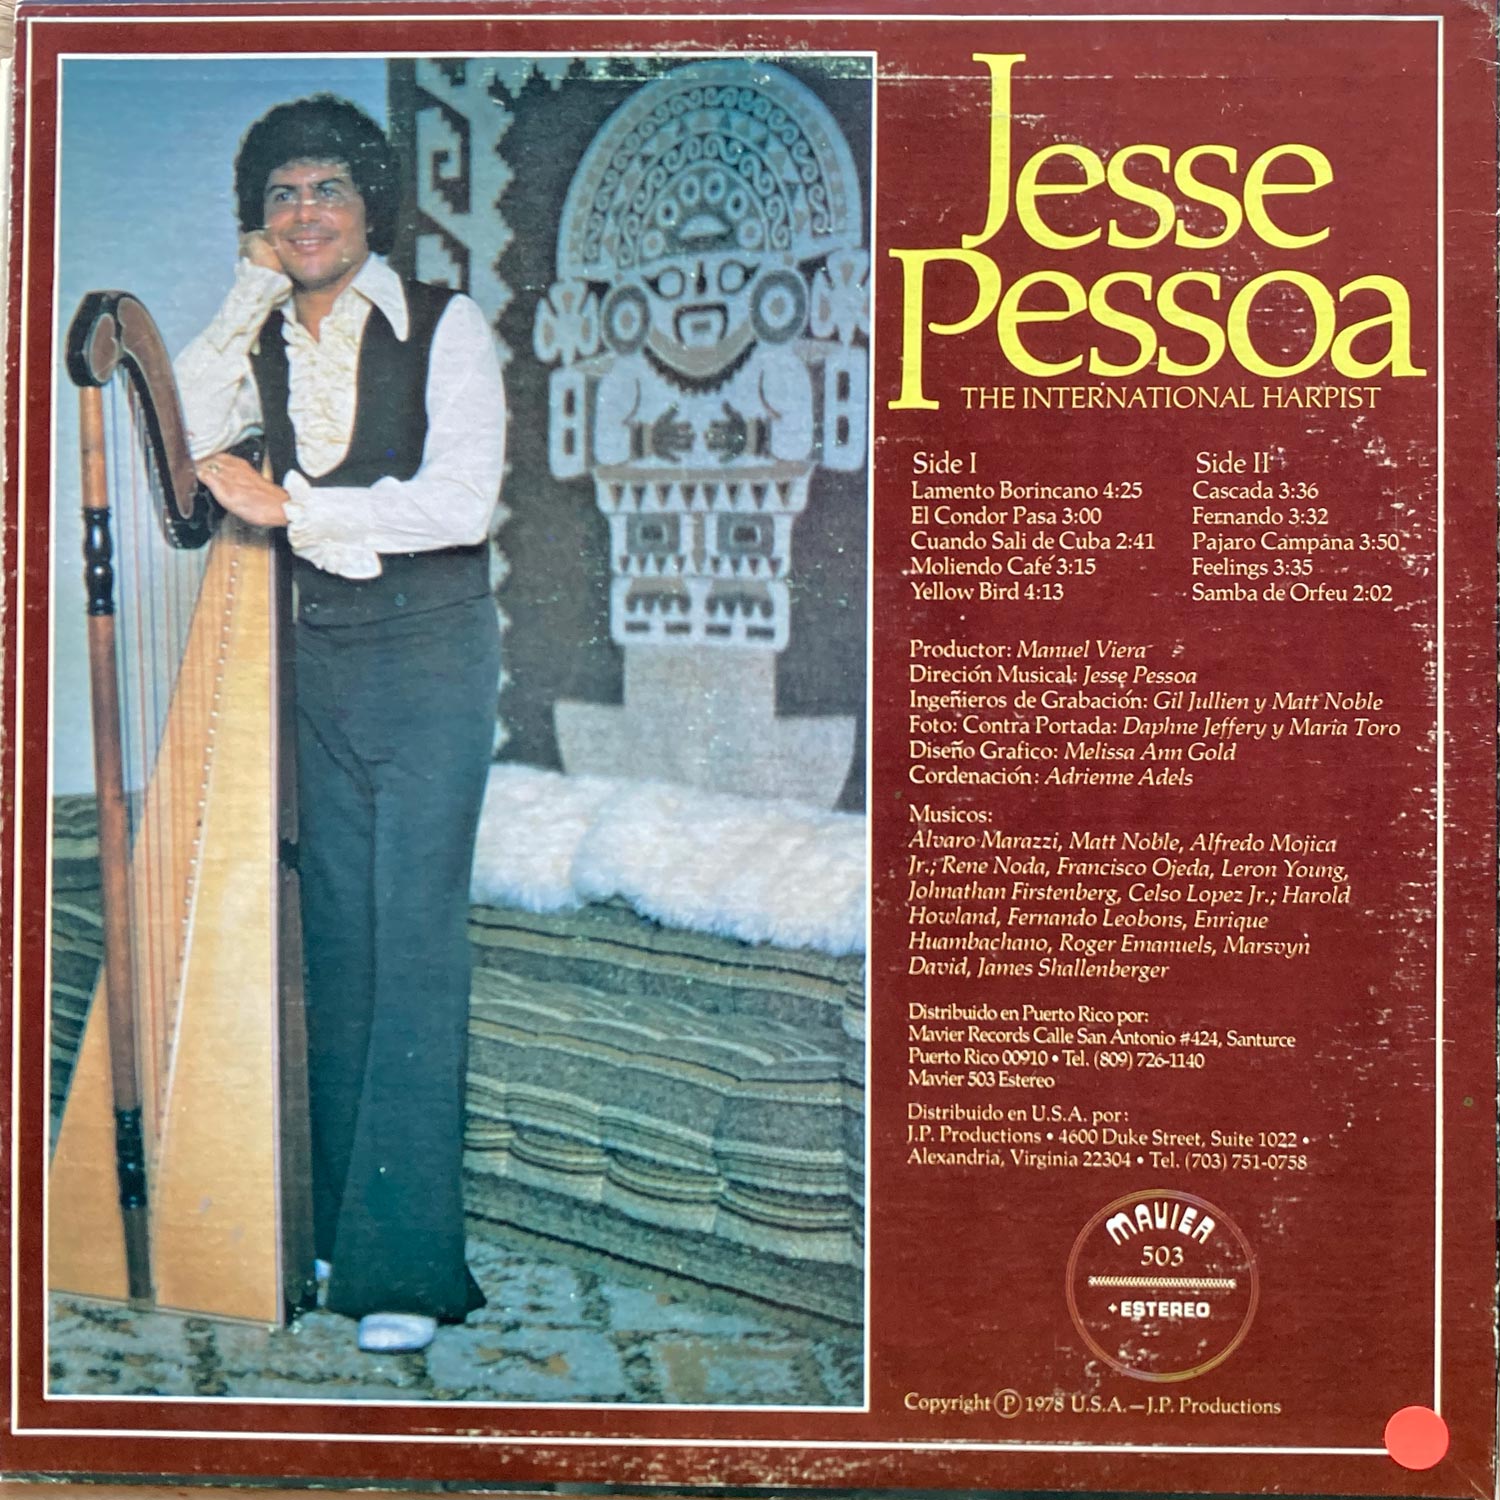 Jesse Pessoa - The International Harpist